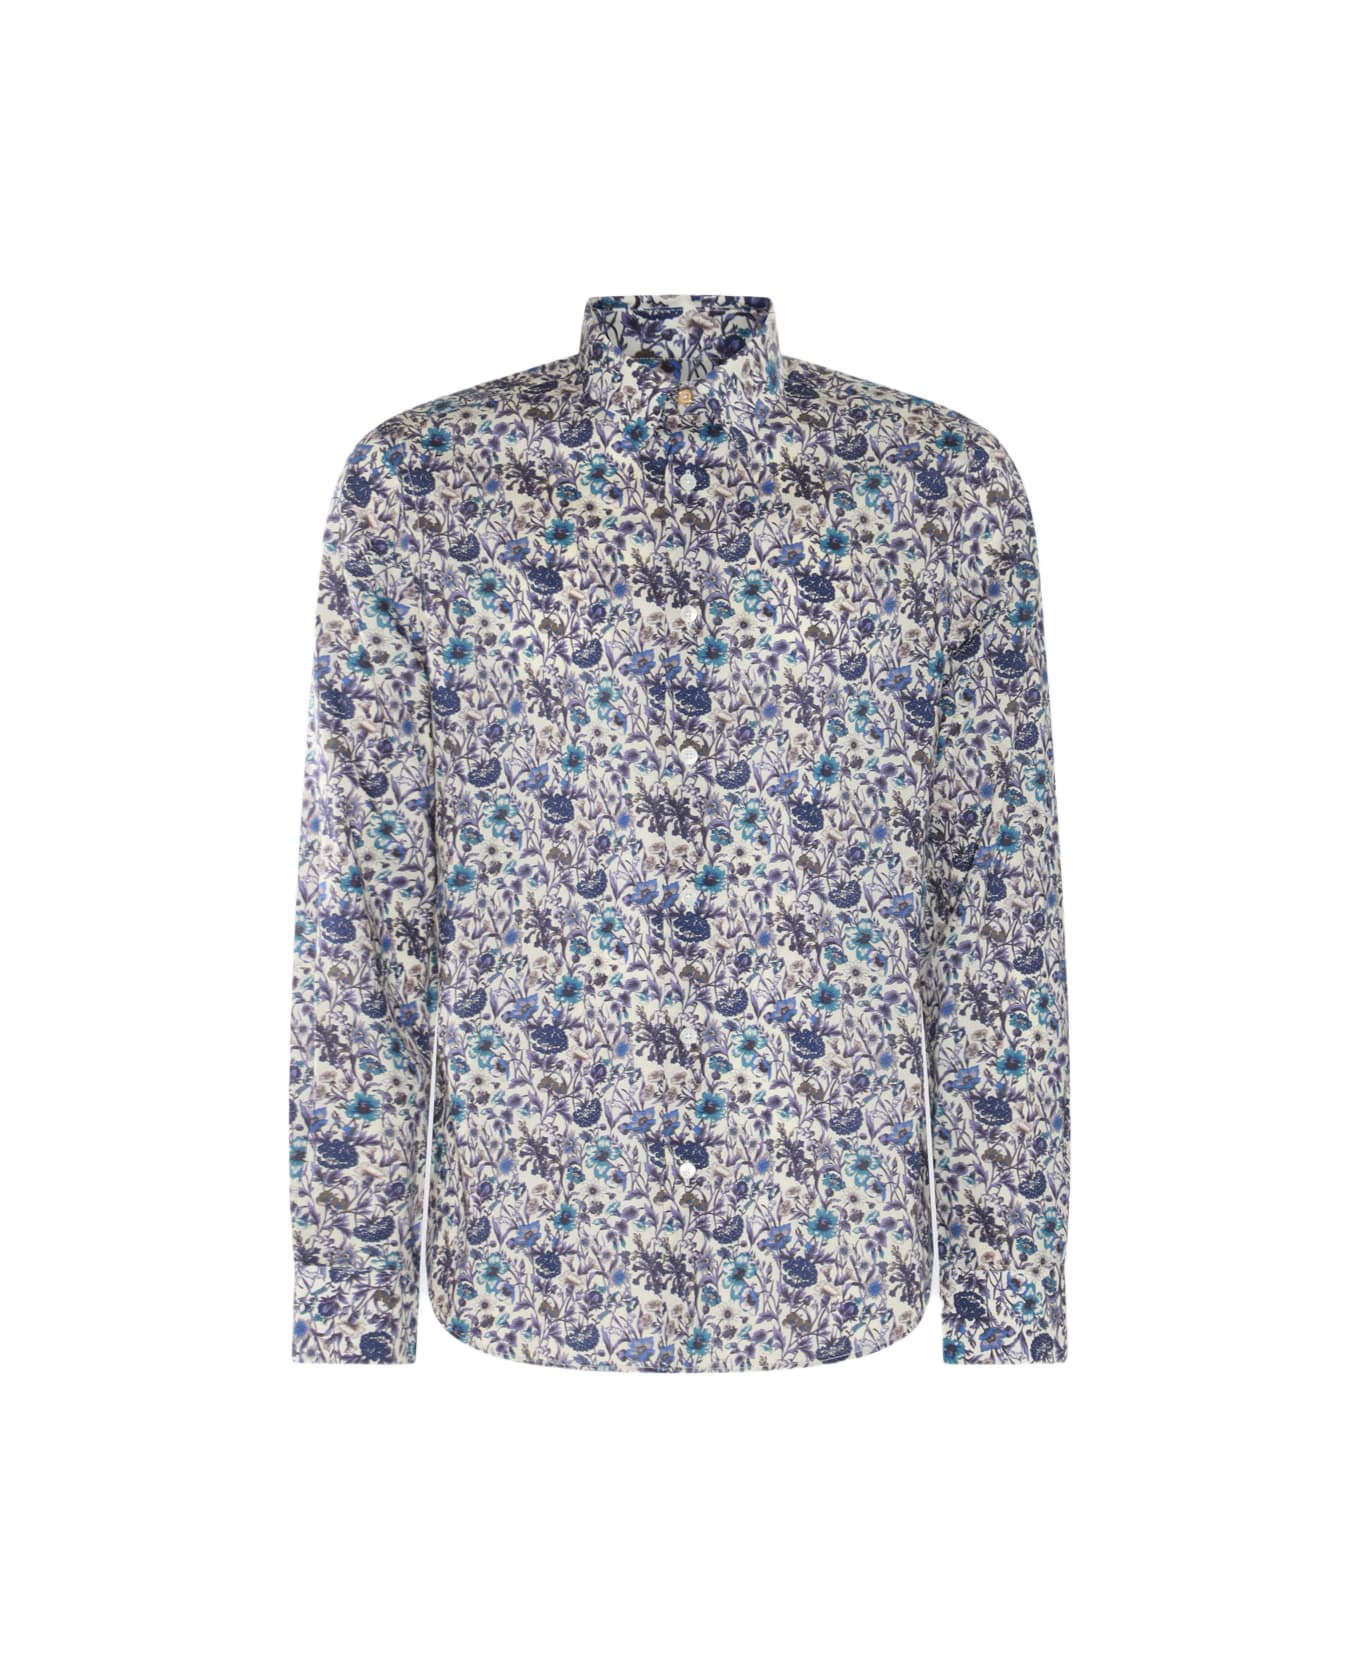 Paul Smith White Multicolour Cotton Shirt - LIGHT BLUE